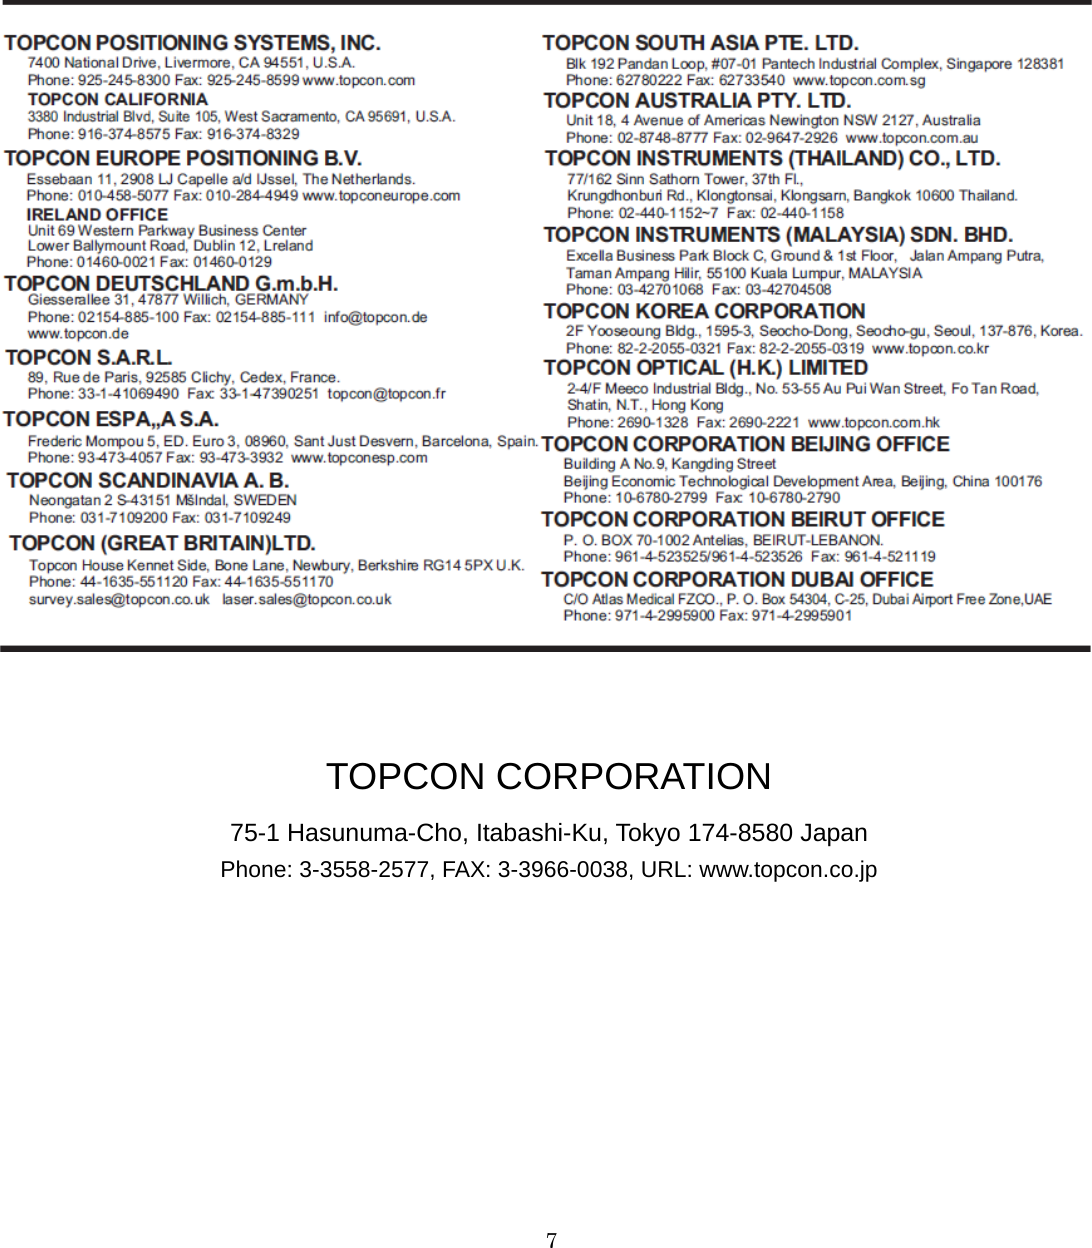   7       TOPCON CORPORATION 75-1 Hasunuma-Cho, Itabashi-Ku, Tokyo 174-8580 Japan Phone: 3-3558-2577, FAX: 3-3966-0038, URL: www.topcon.co.jp 